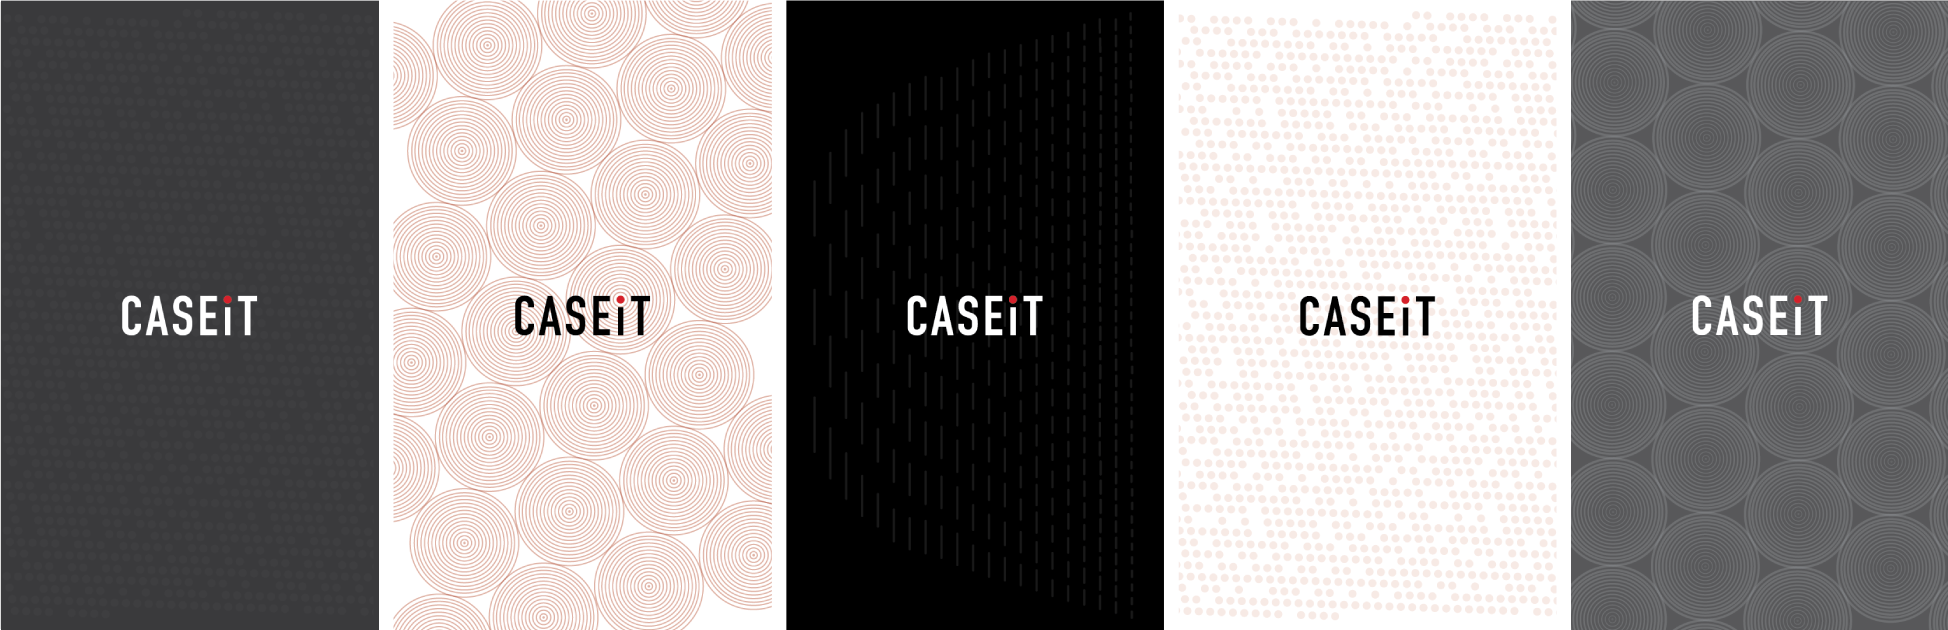 CaseIT patterns